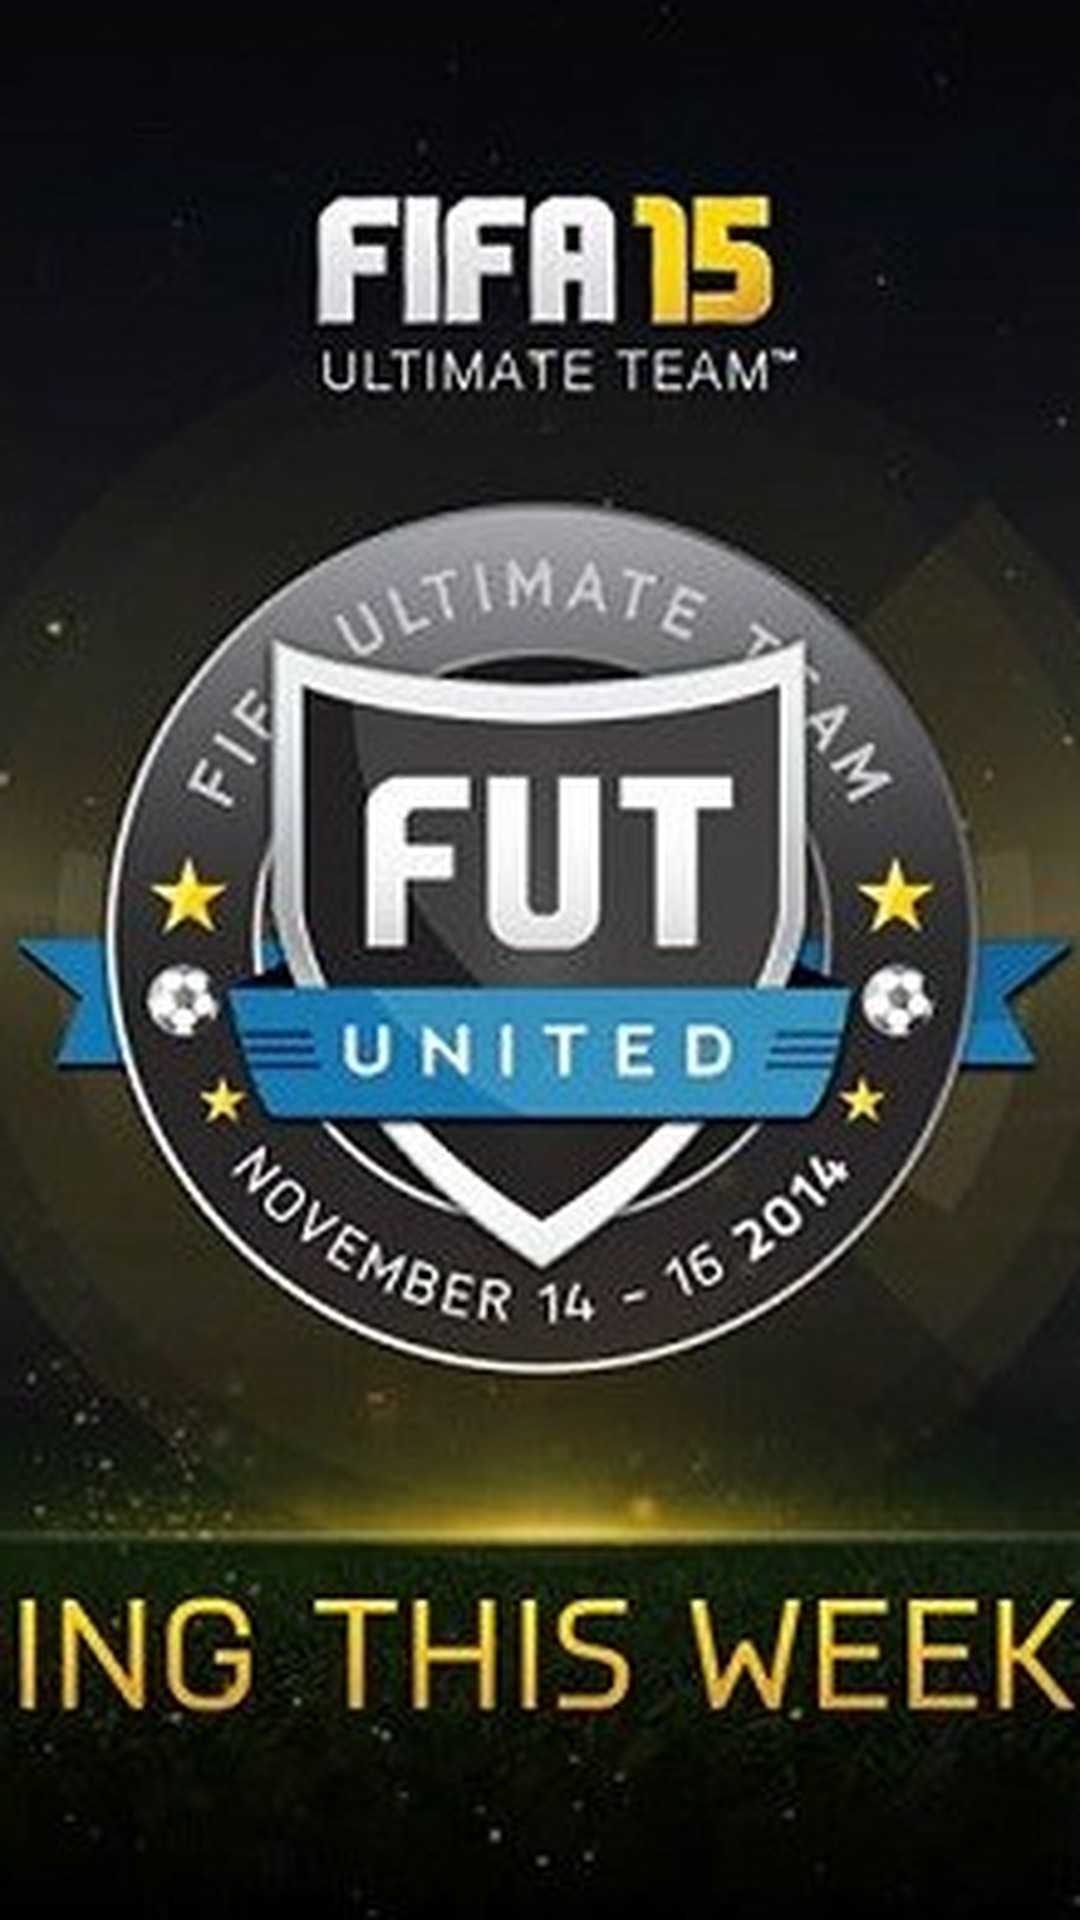 Site para administração de equipes de FIFA Ultimate Team já está